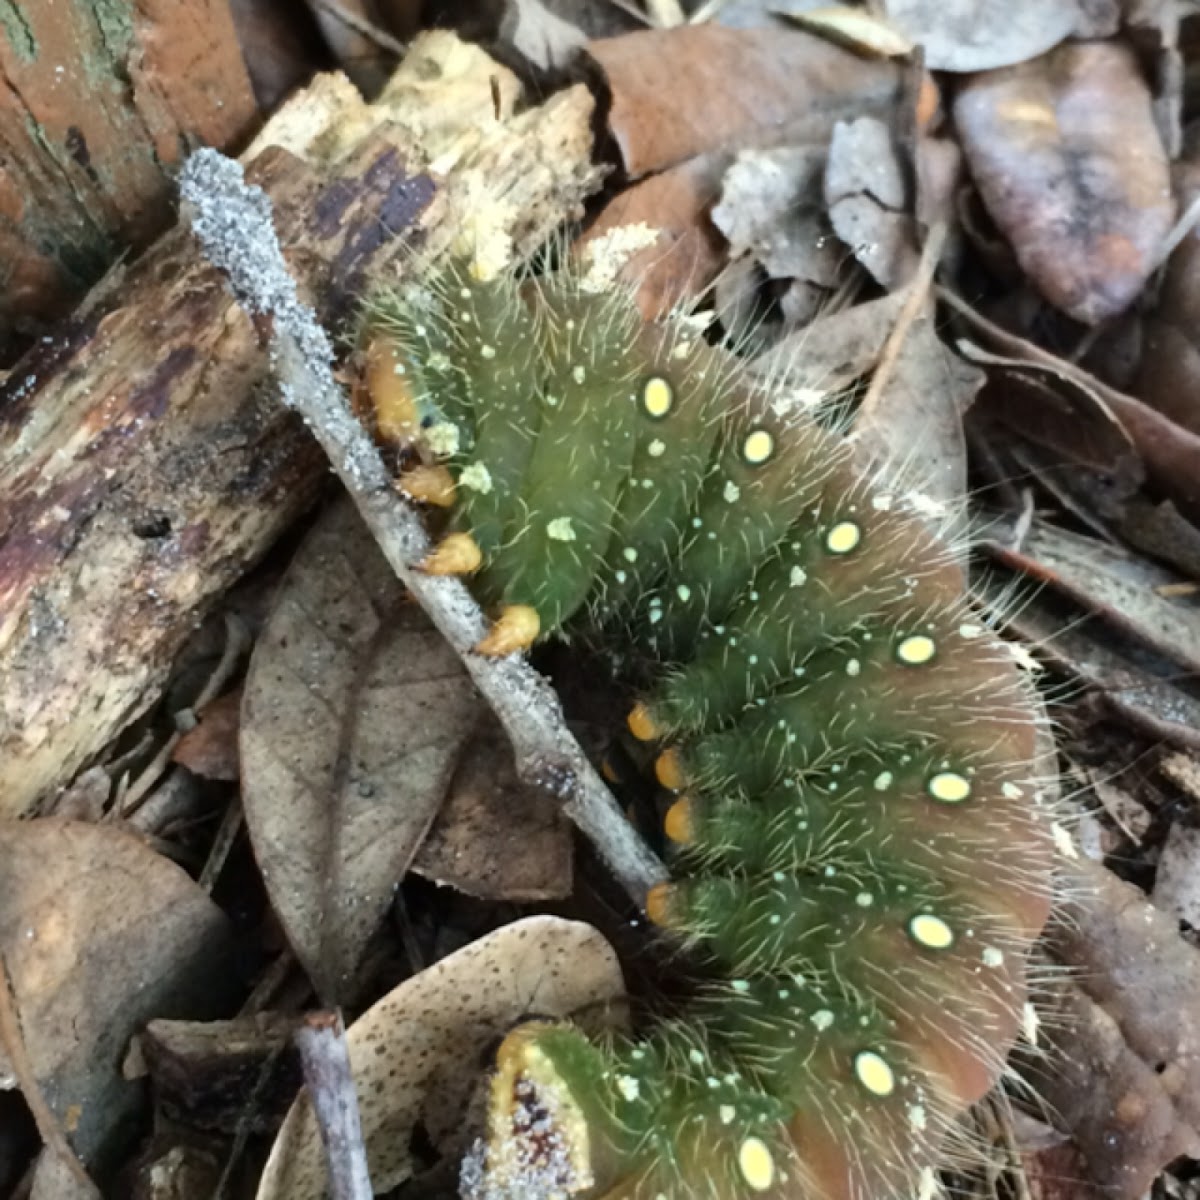 Imperial Moth caterpillar